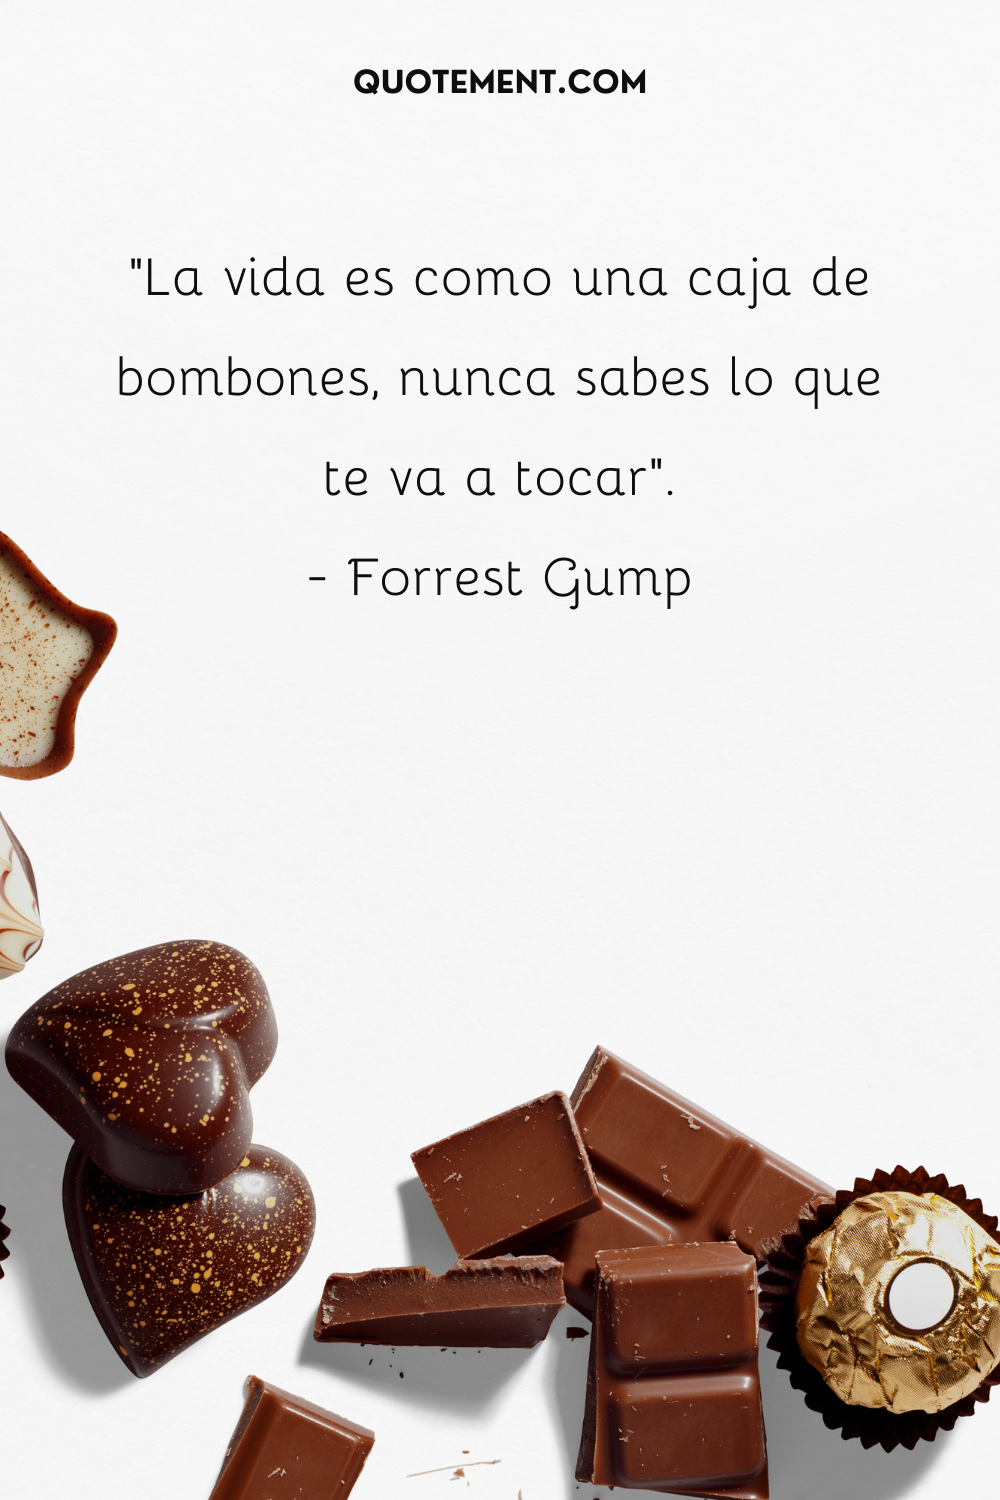 "La vida es como una caja de bombones, nunca sabes lo que te va a tocar". - Forrest Gump